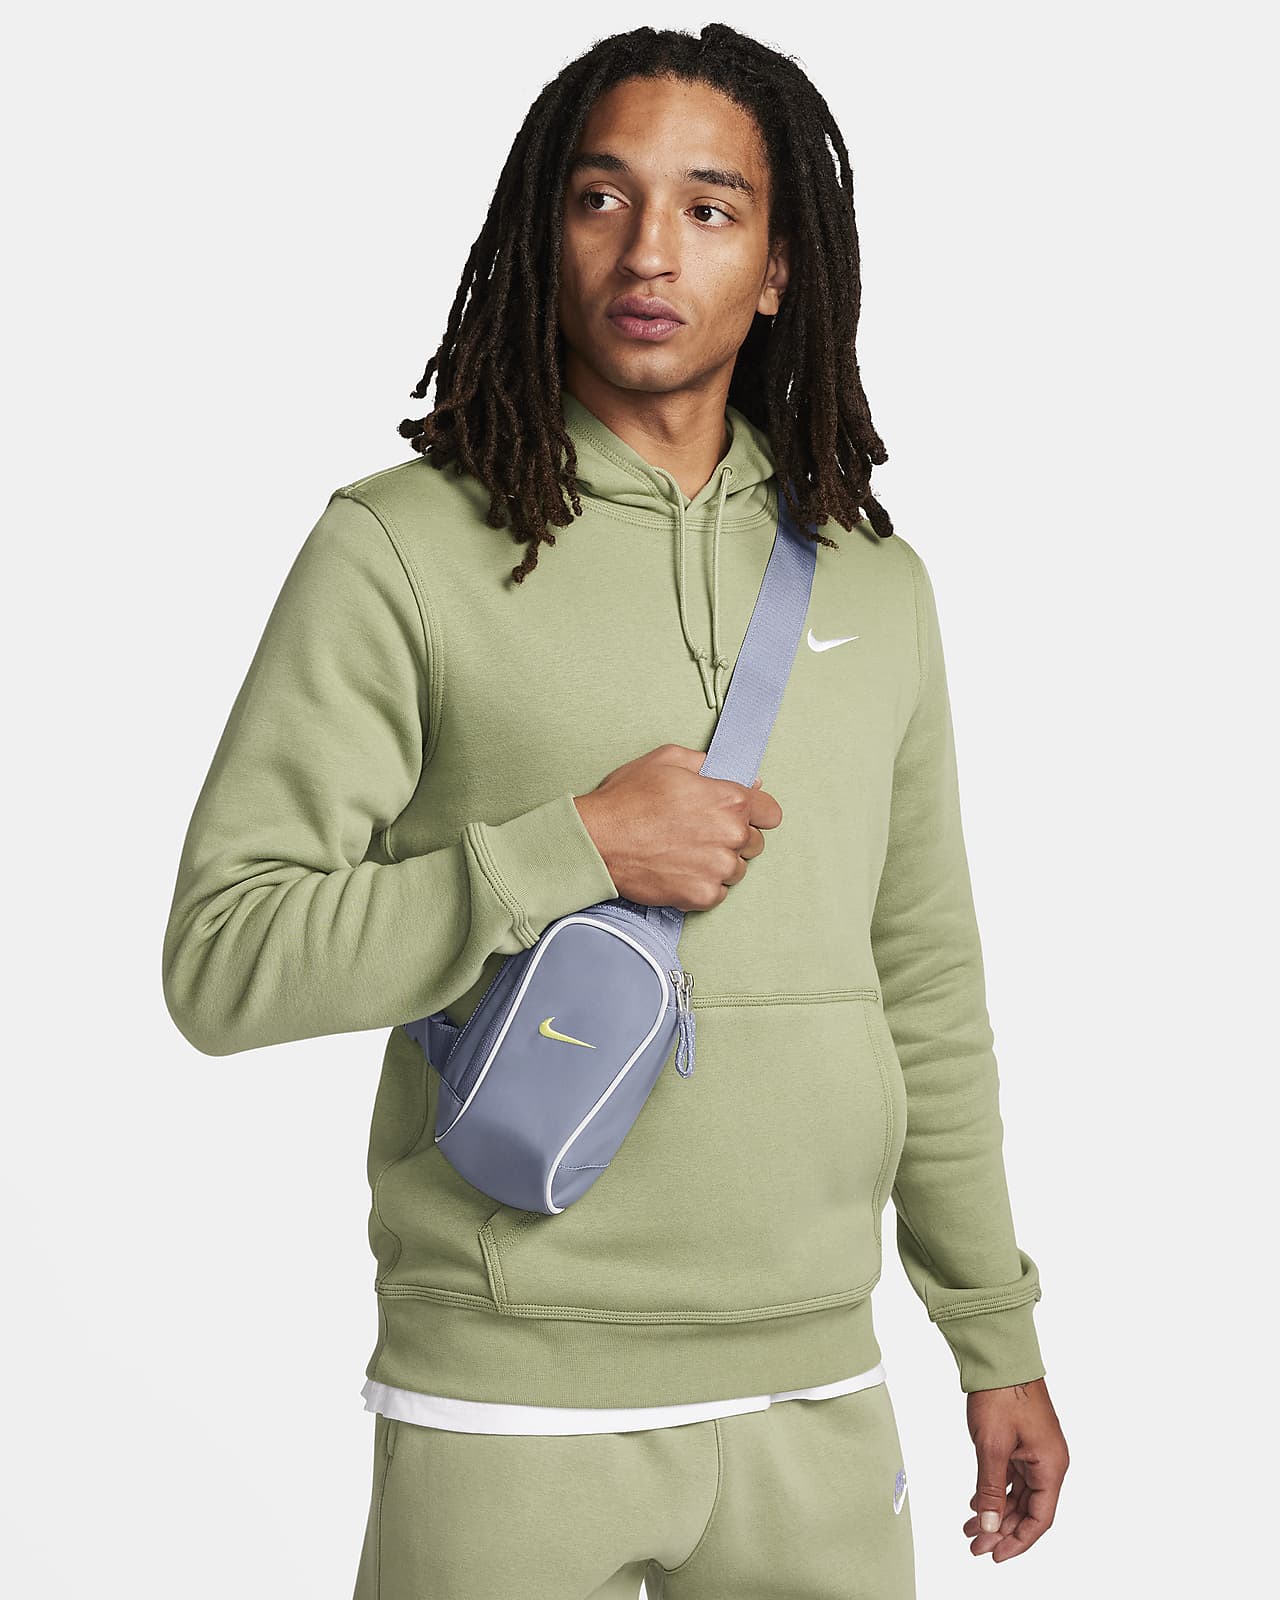 Χιαστί τσάντα Nike Sportswear Essentials (1 L)